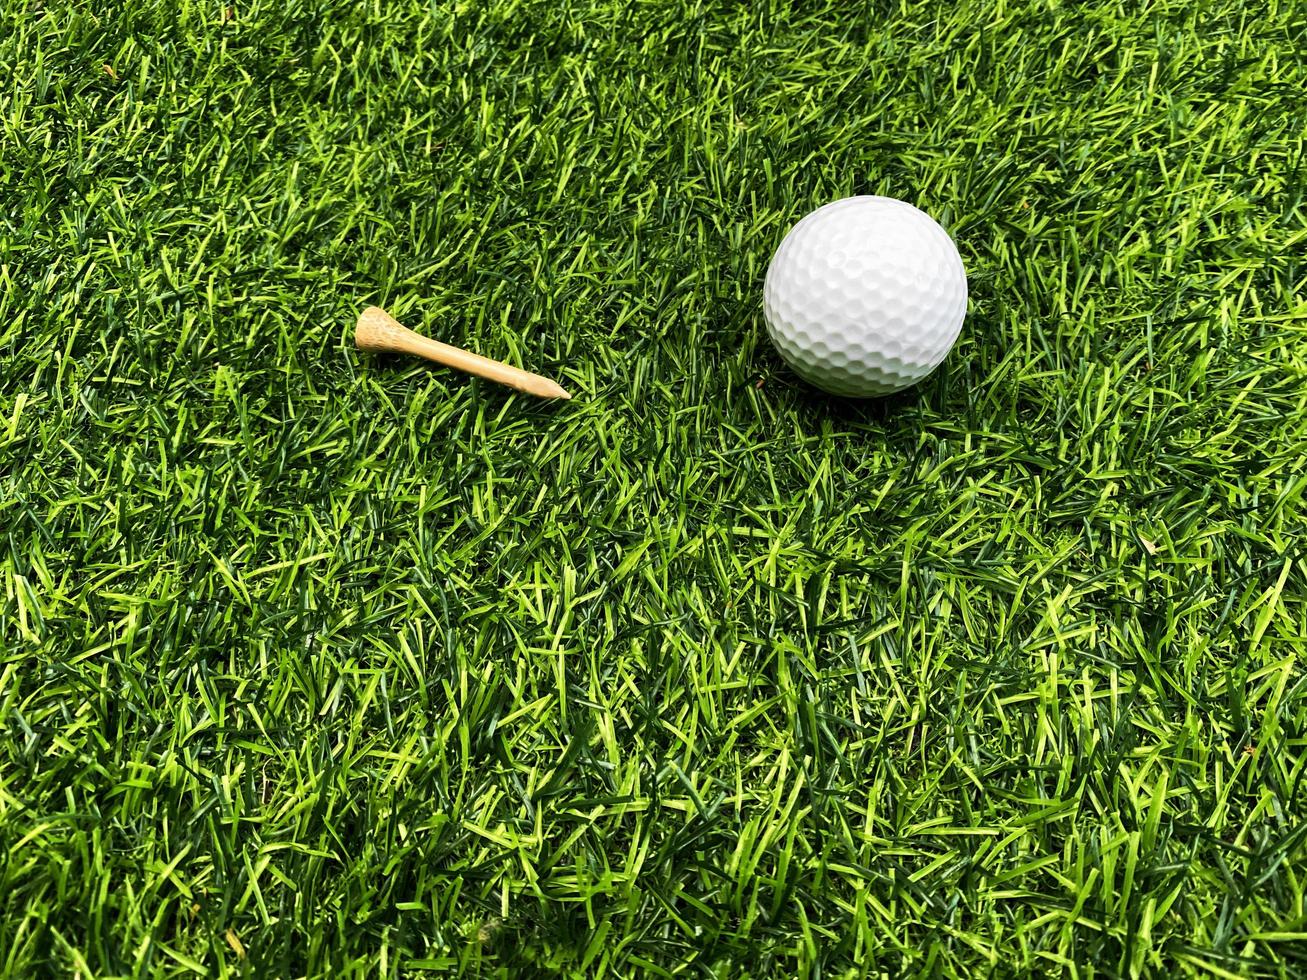 pelota de golf de cerca sobre hierba verde en un hermoso paisaje borroso de fondo de golf.concepto de deporte internacional que se basa en habilidades de precisión para la relajación de la salud. foto